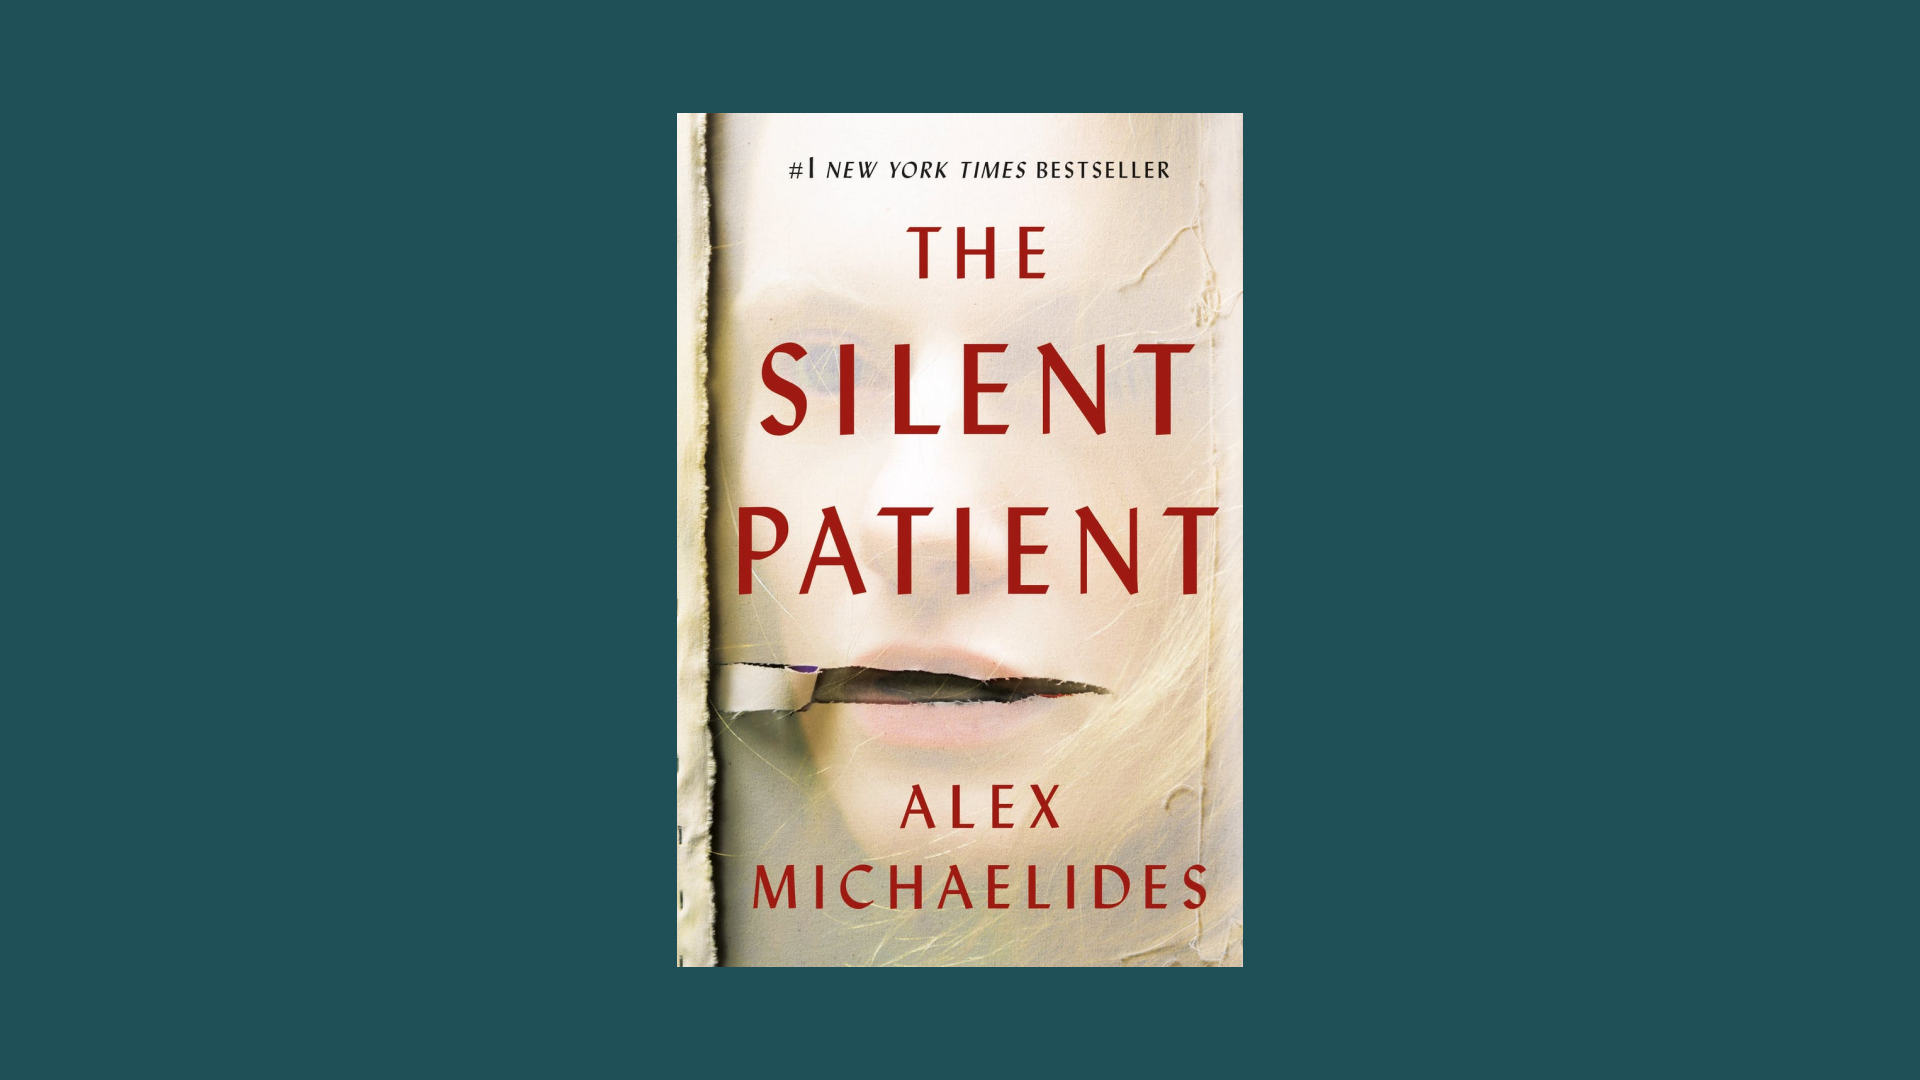 “The Silent Patient” by Alex Michaelides